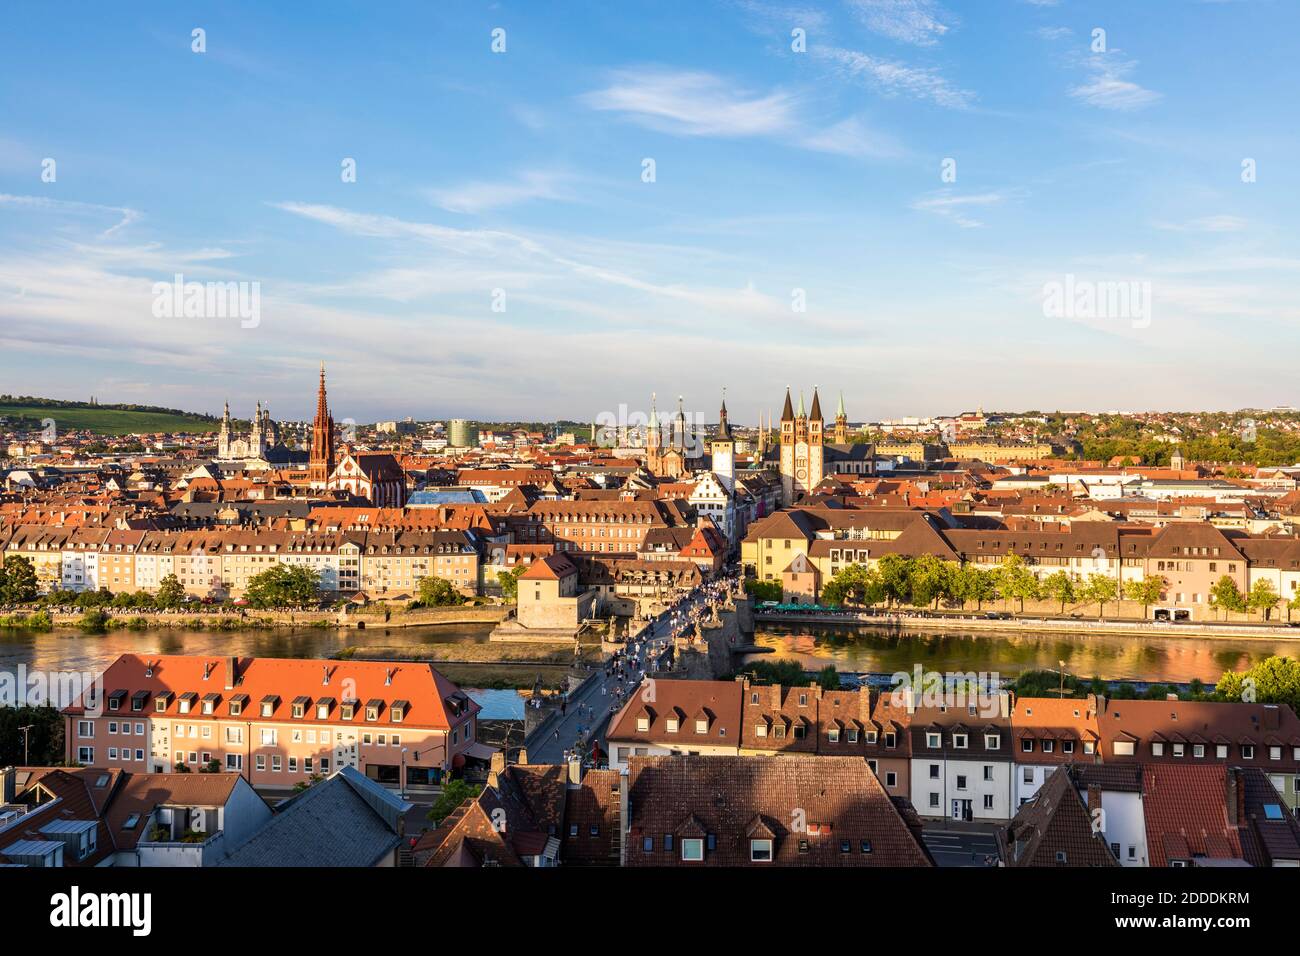 Deutschland, Bayern, Würzburg, Alte Mainbrücke und umliegende Gebäude Stockfoto